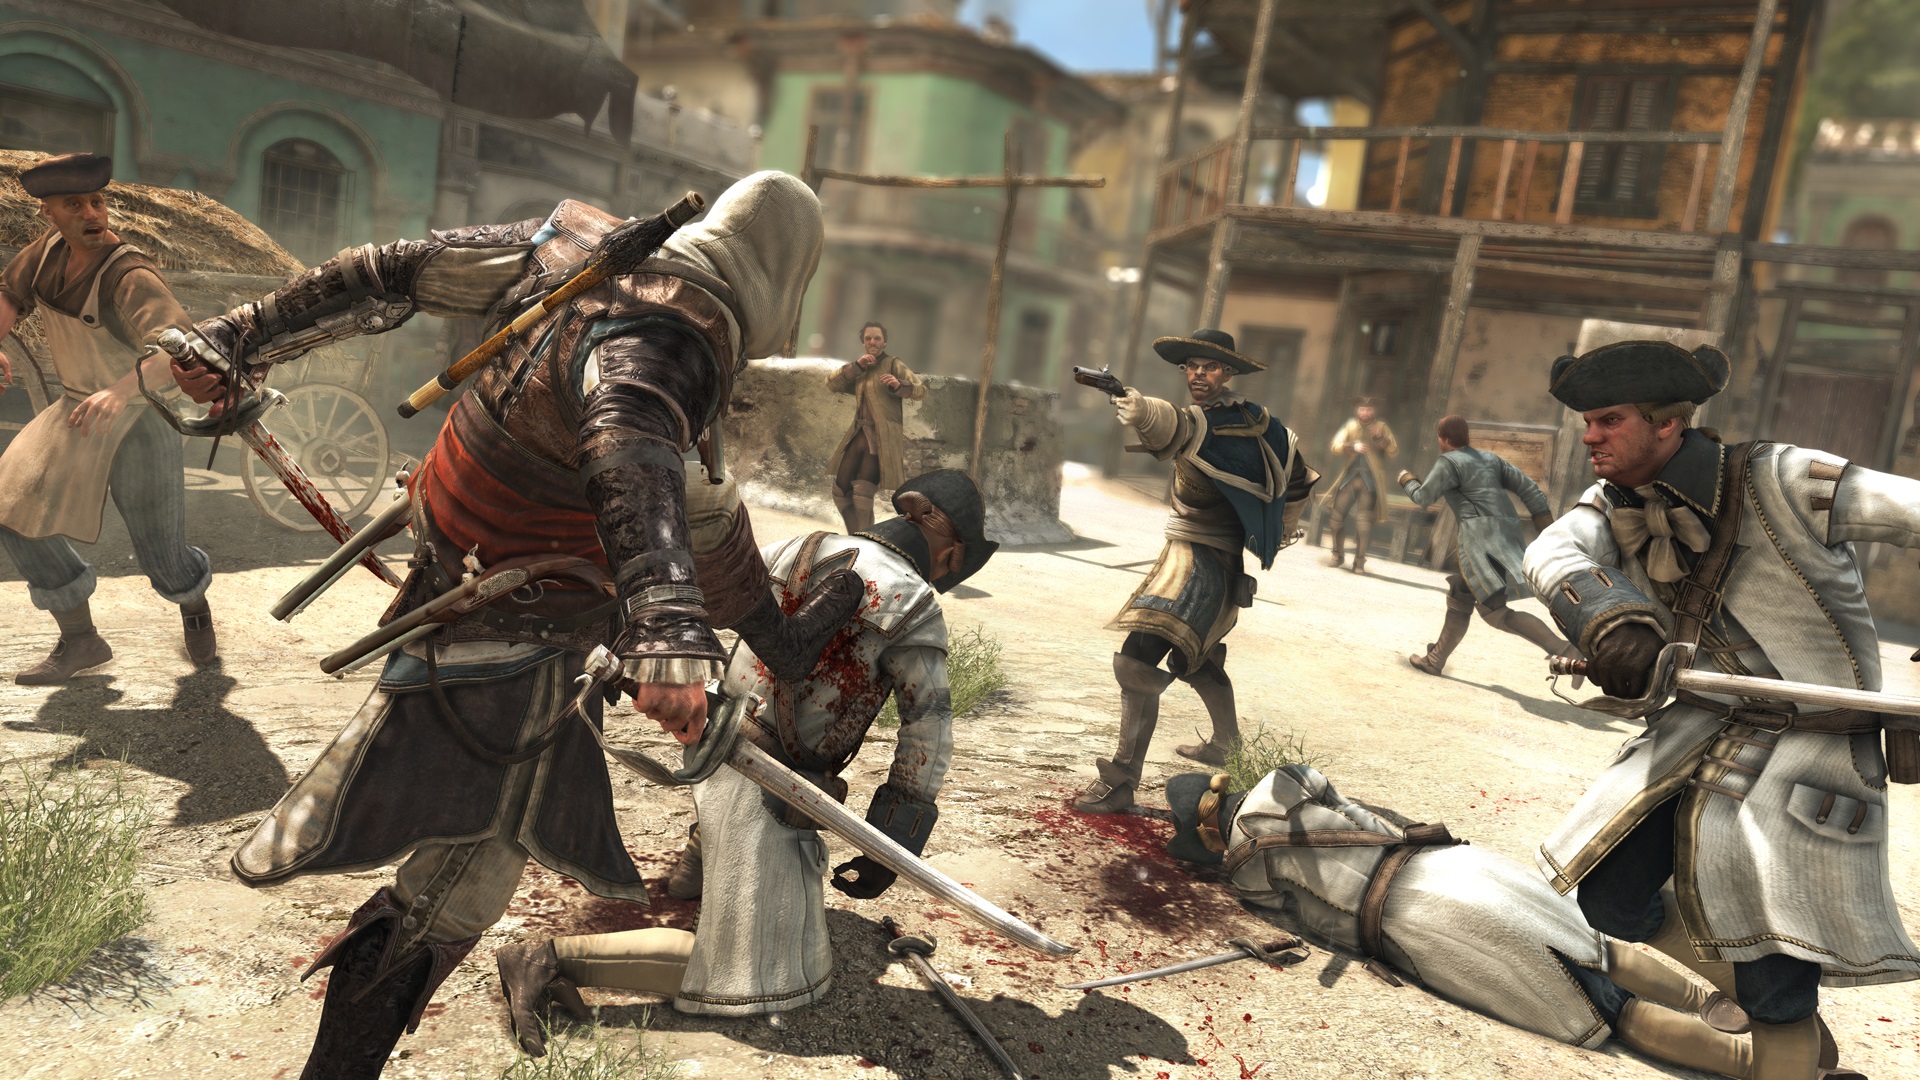 Assassin's Creed IV: Black Flag Každú situáciu je možné vyriešiť bojom, obyčajne bez postihov.